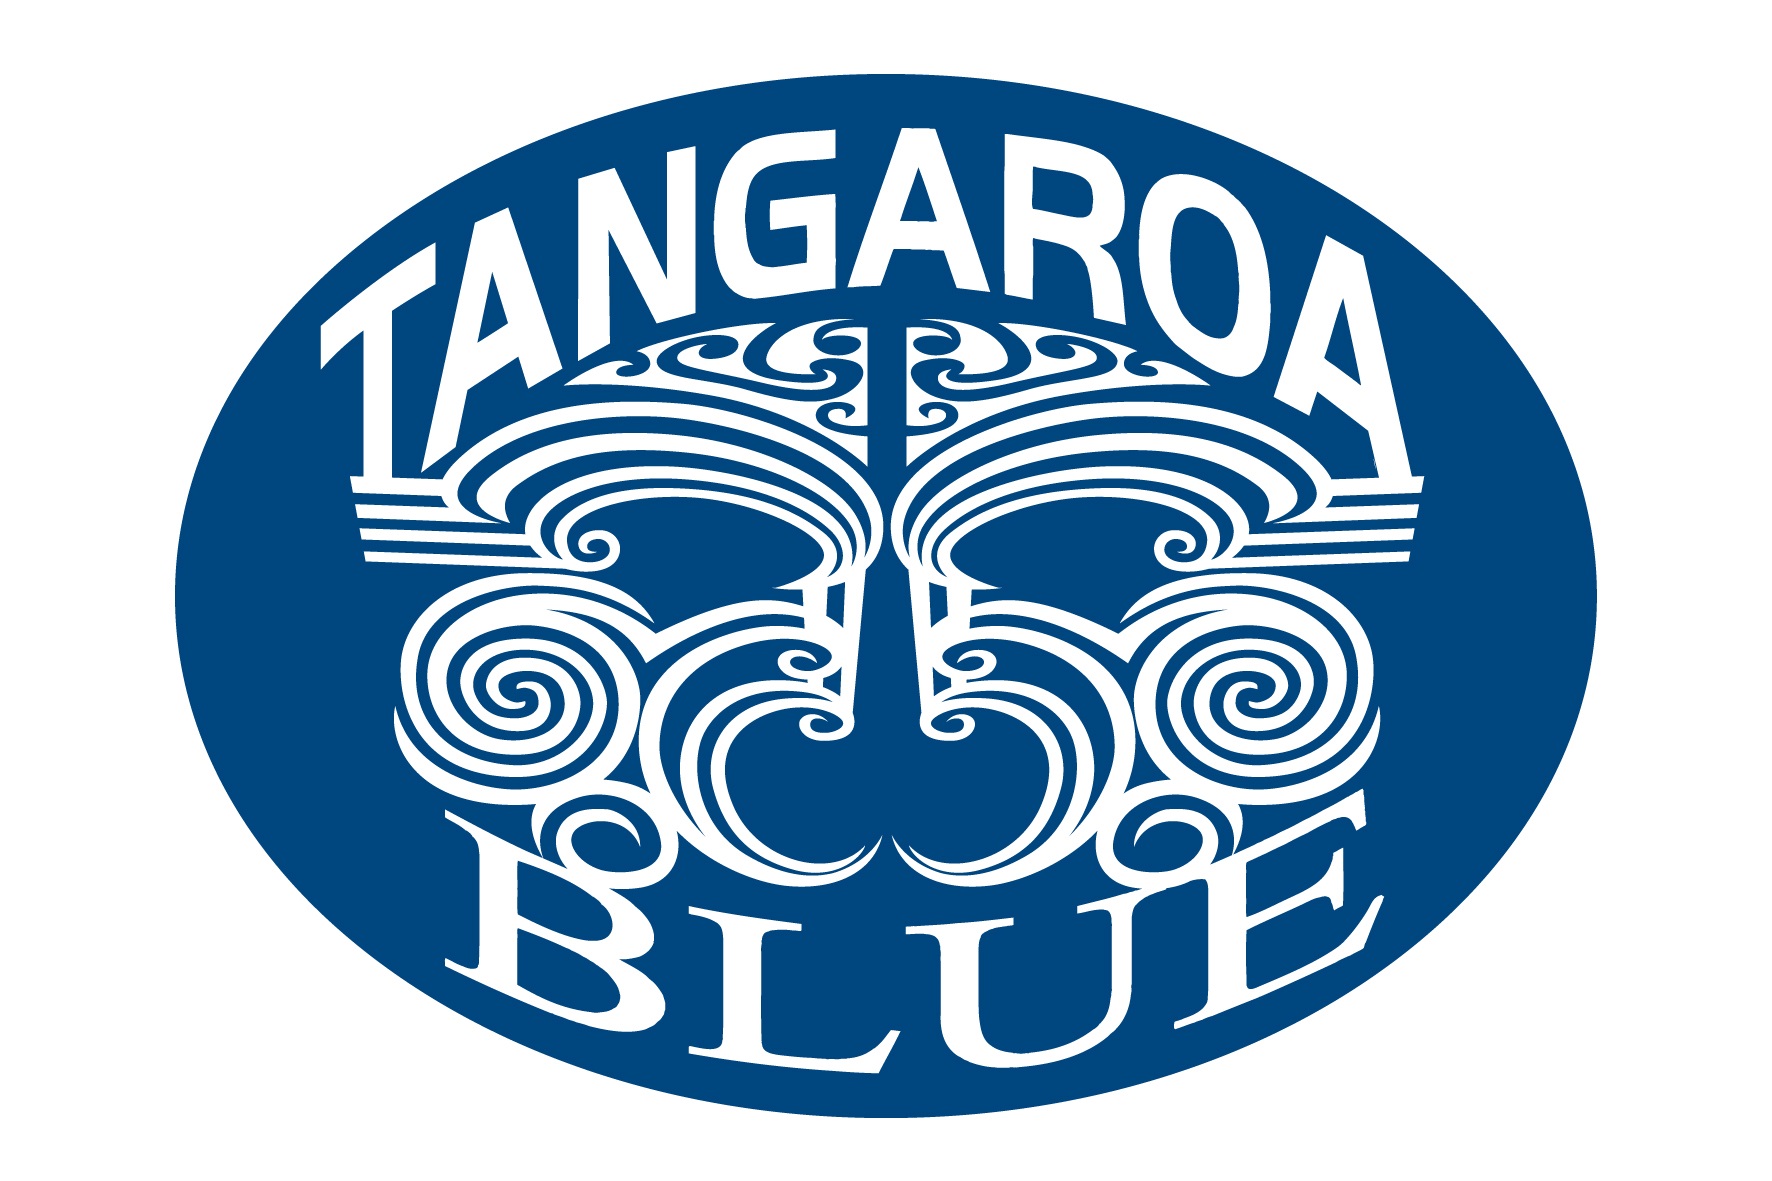 Tangaroa Blue